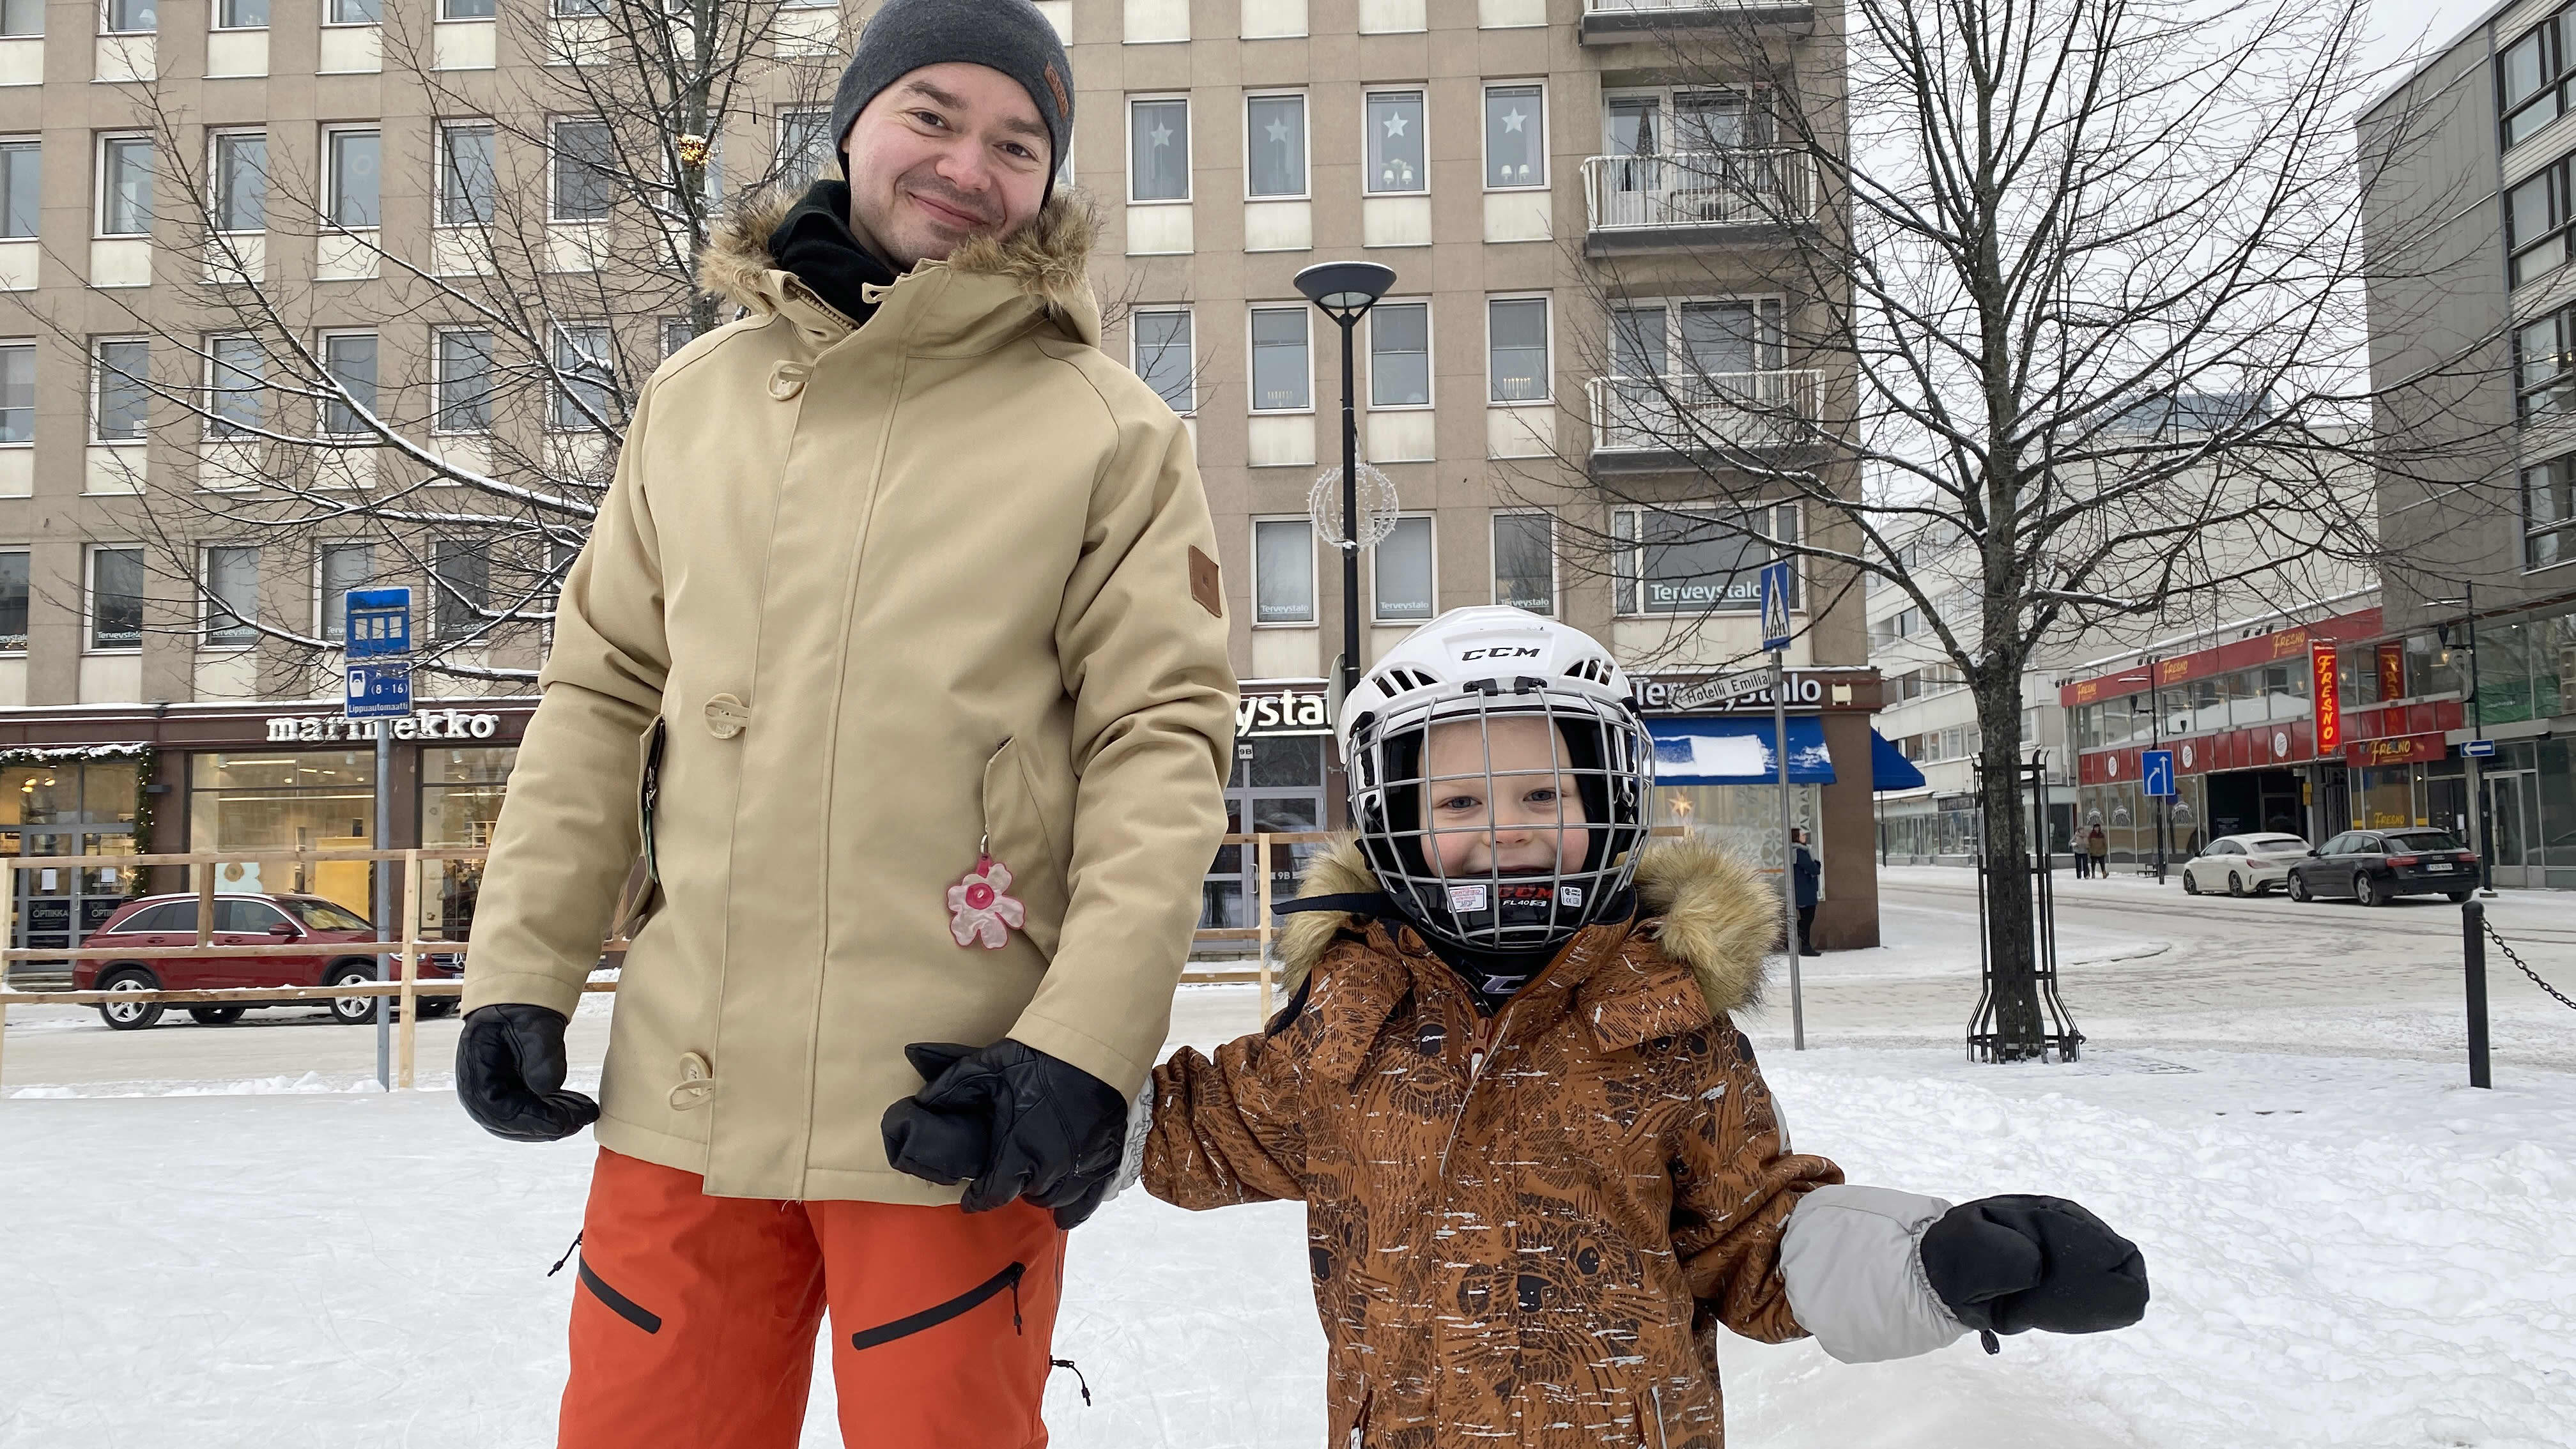 Isä Aleksi Aromaa ja poika Okko Aromaa luistelemassa Hämeenlinnan torin jäällä käsi kädessä, hymyilevät kameralle.